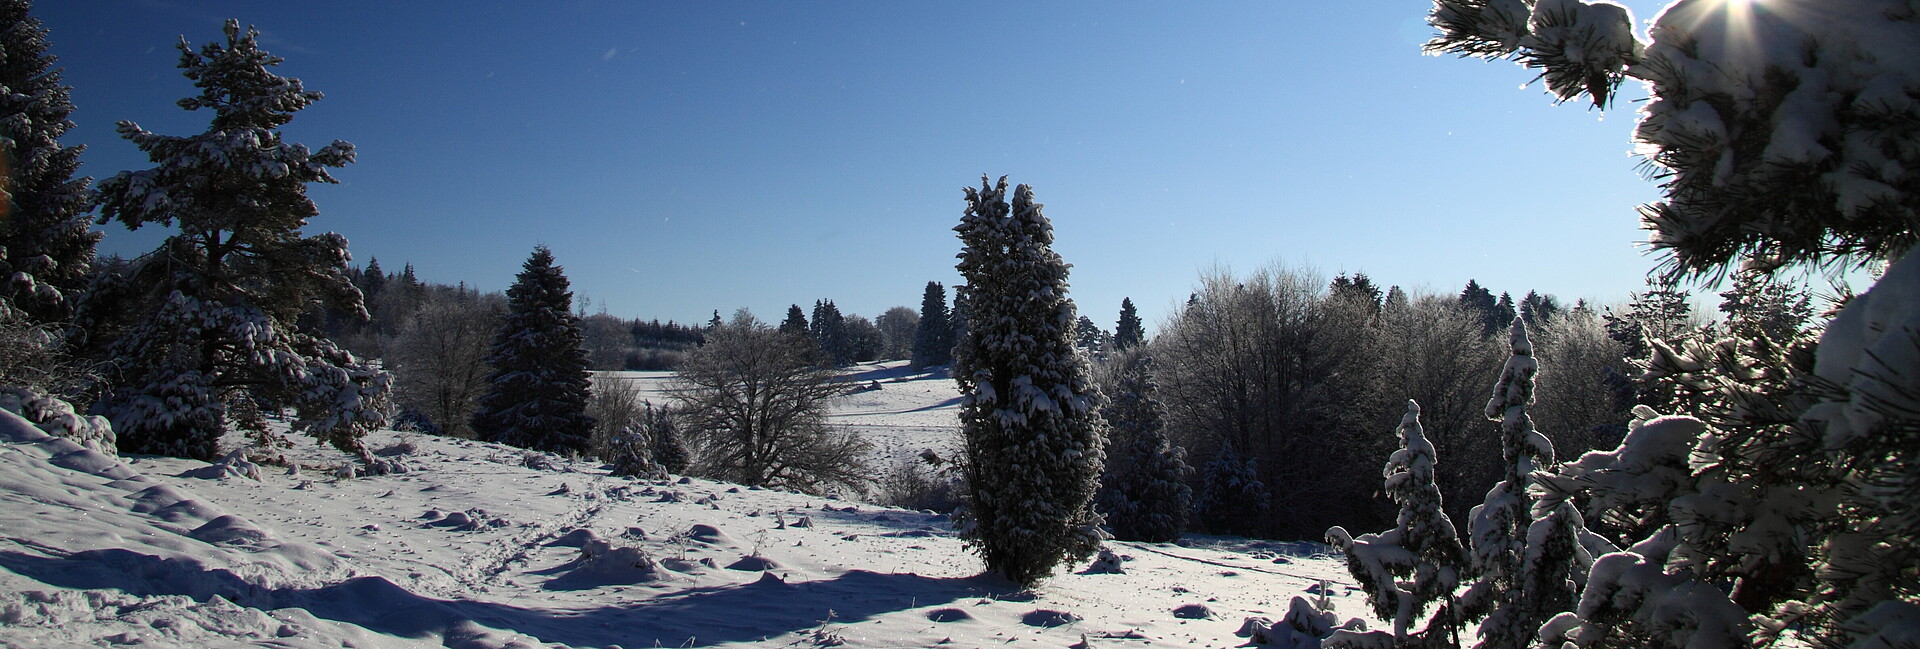 Blick auf eine verschneite Winterlandschaft